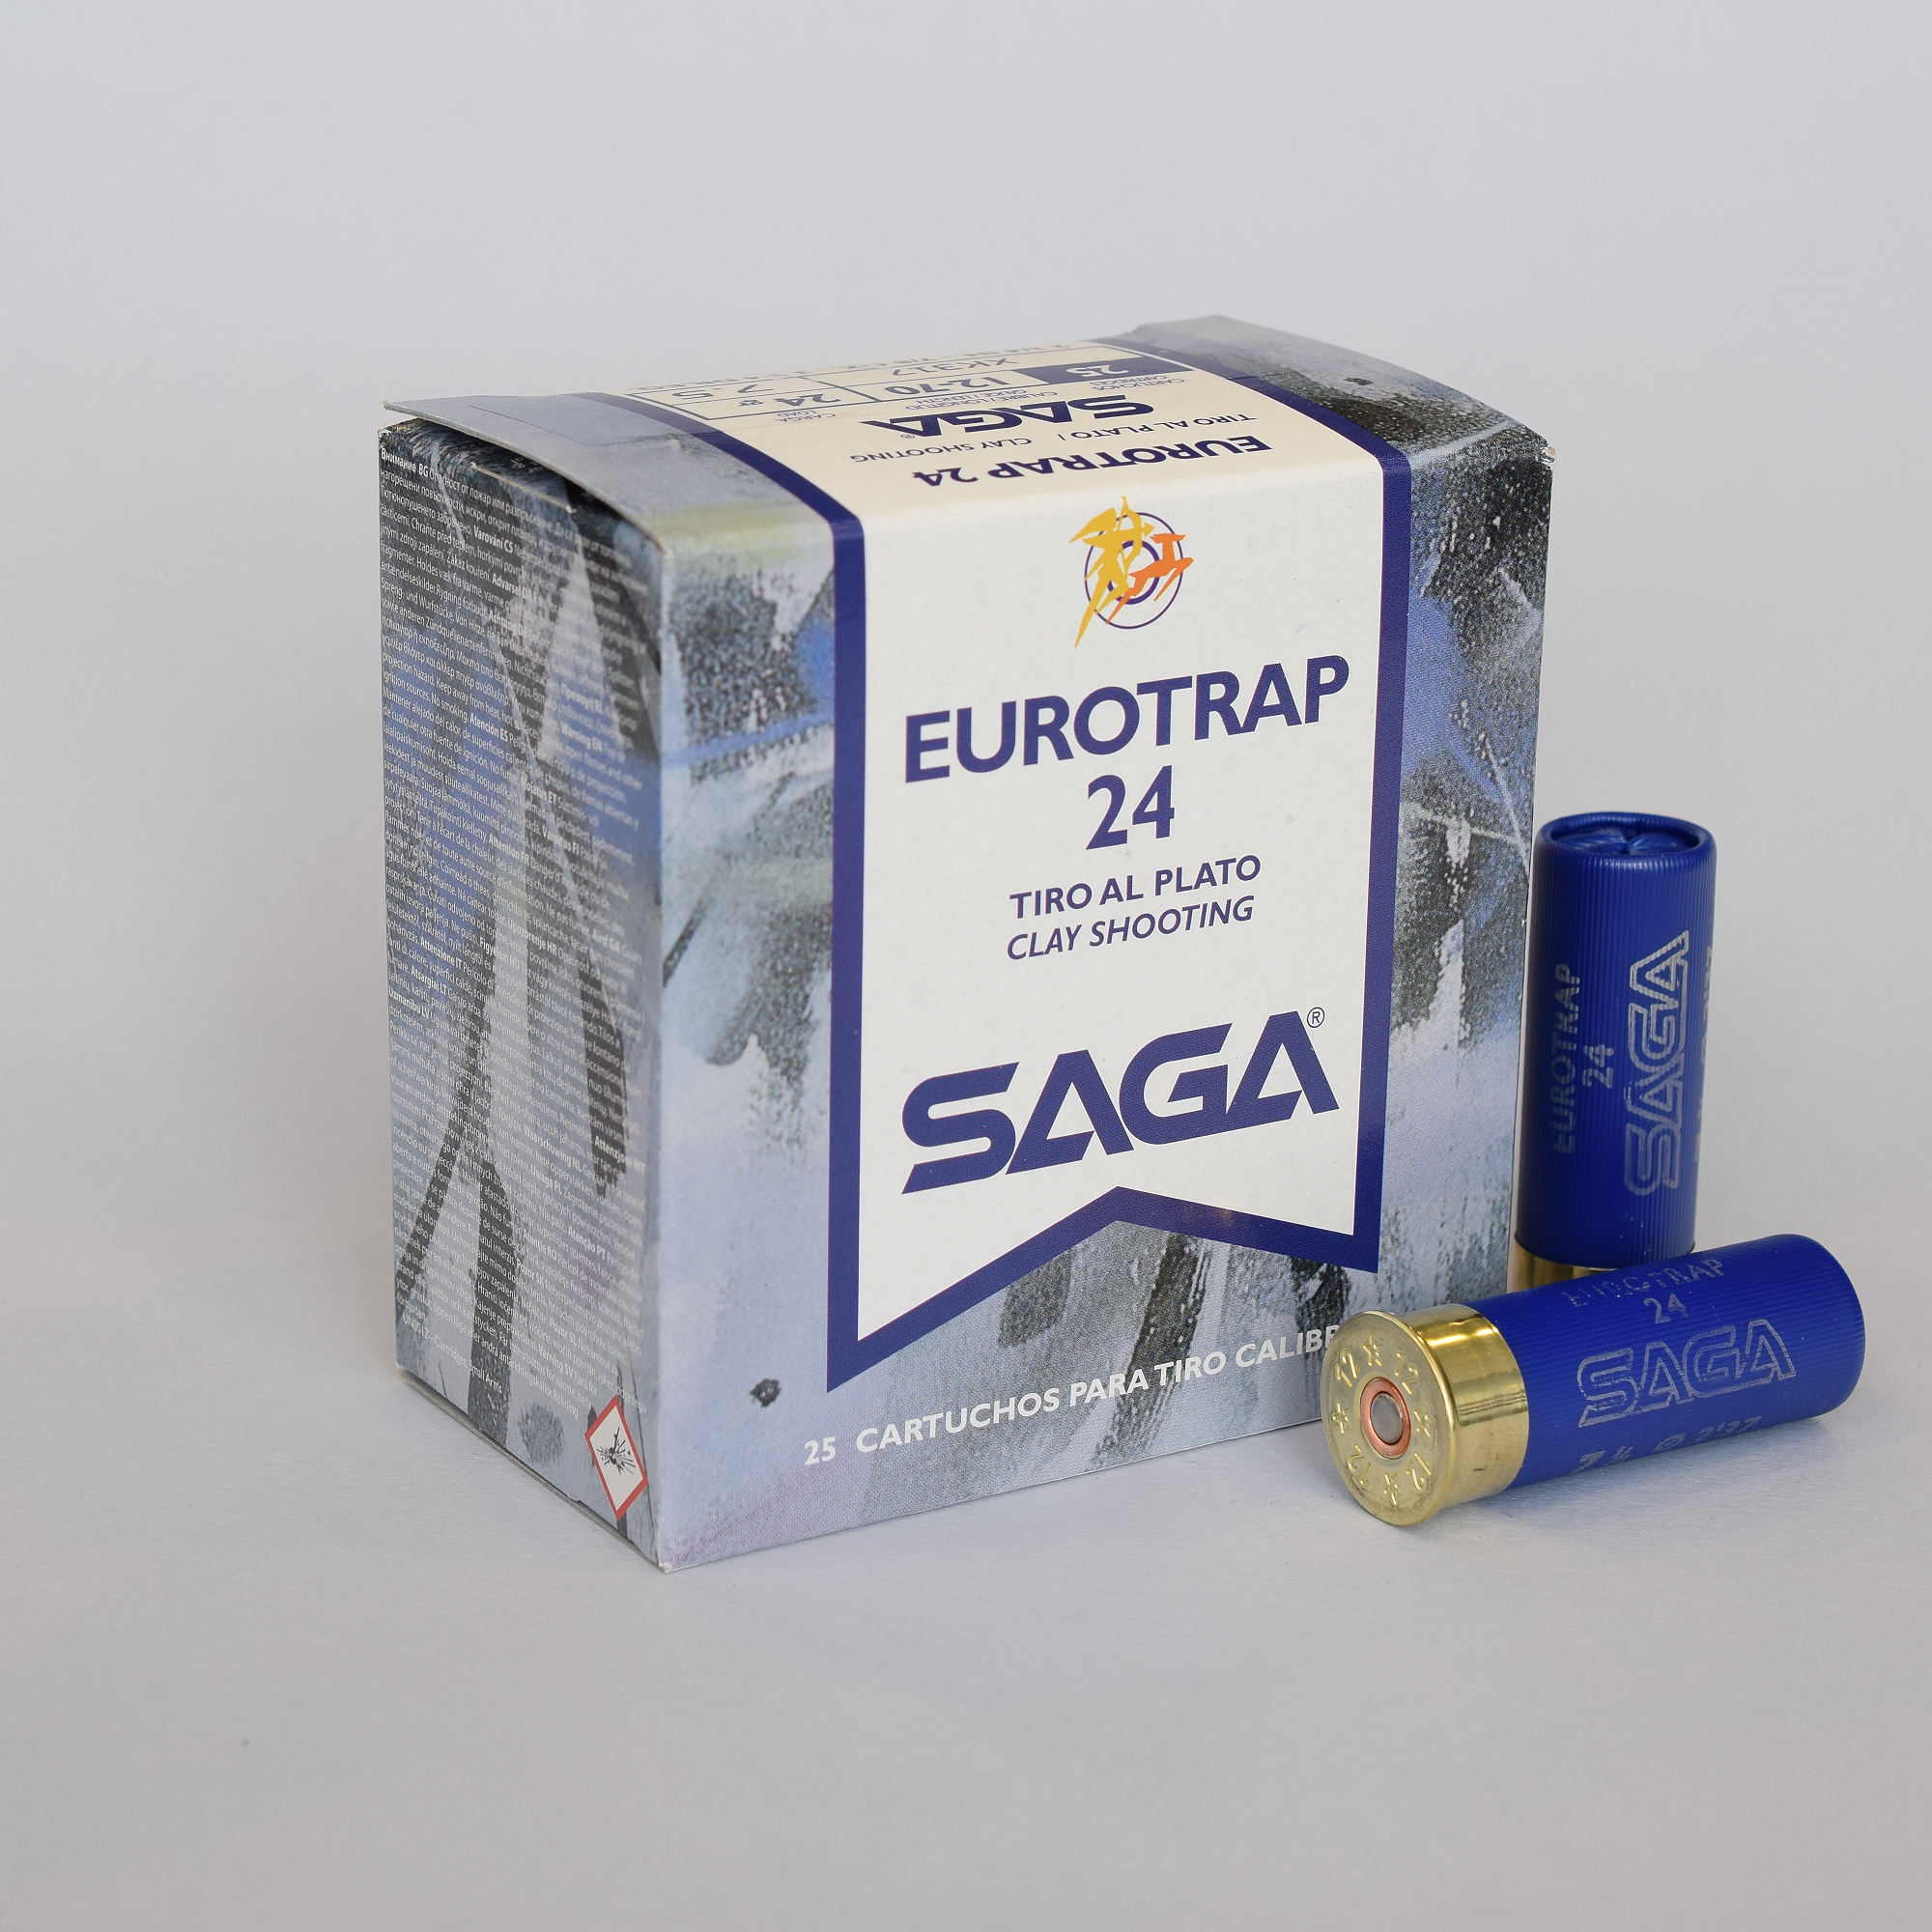 12 x 70 Euro Trap 24 g - Saga